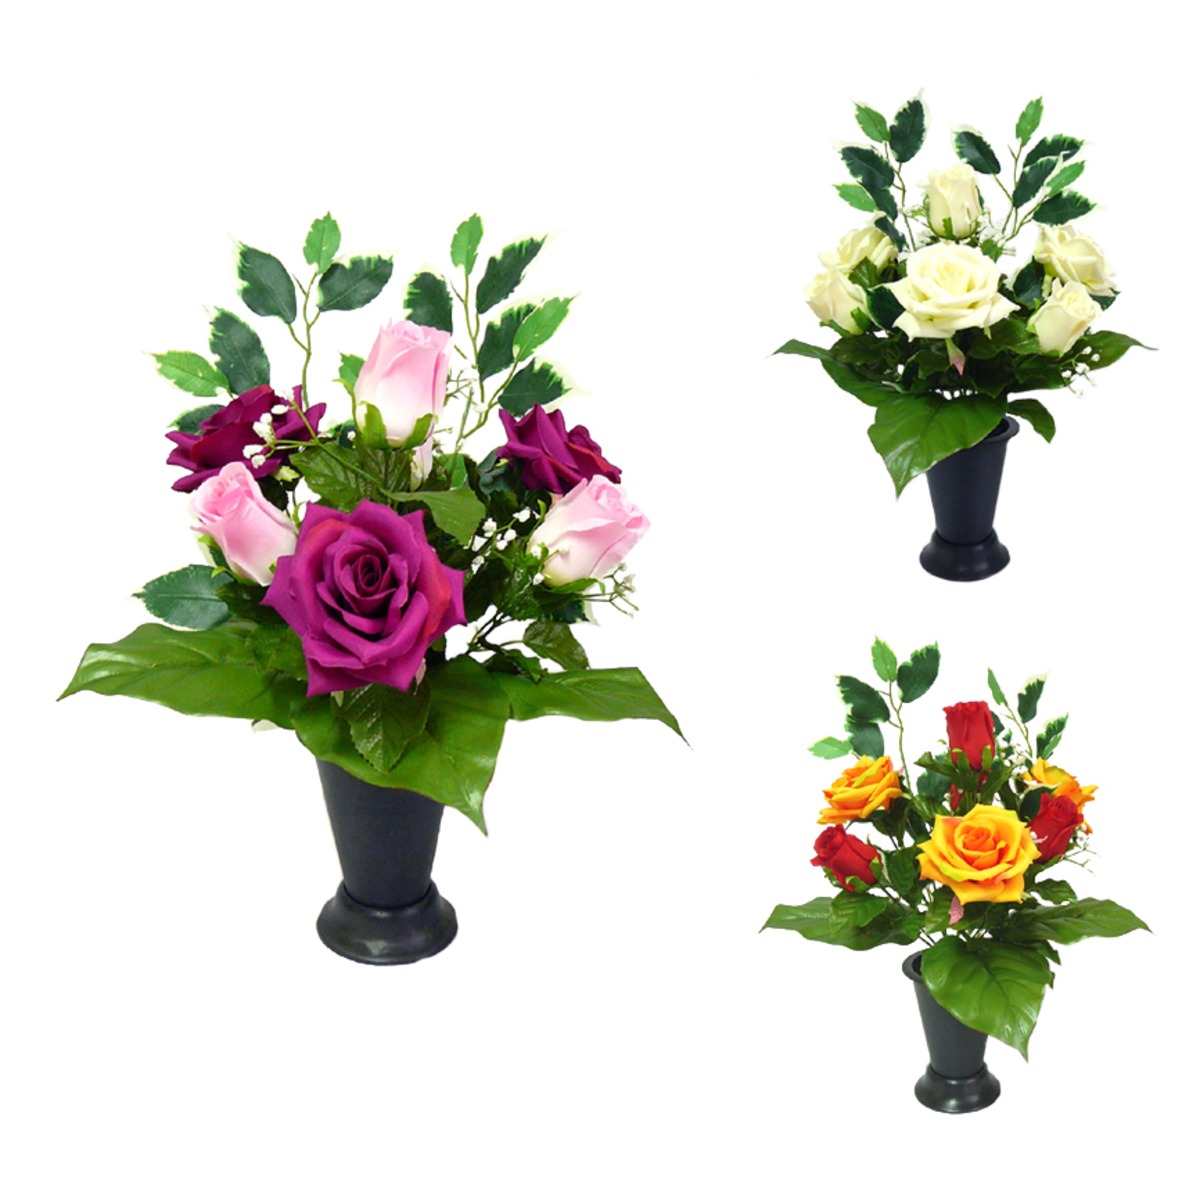 Cône boutons de roses + roses + ficus - 11 x H 52 cm - Différents modèles